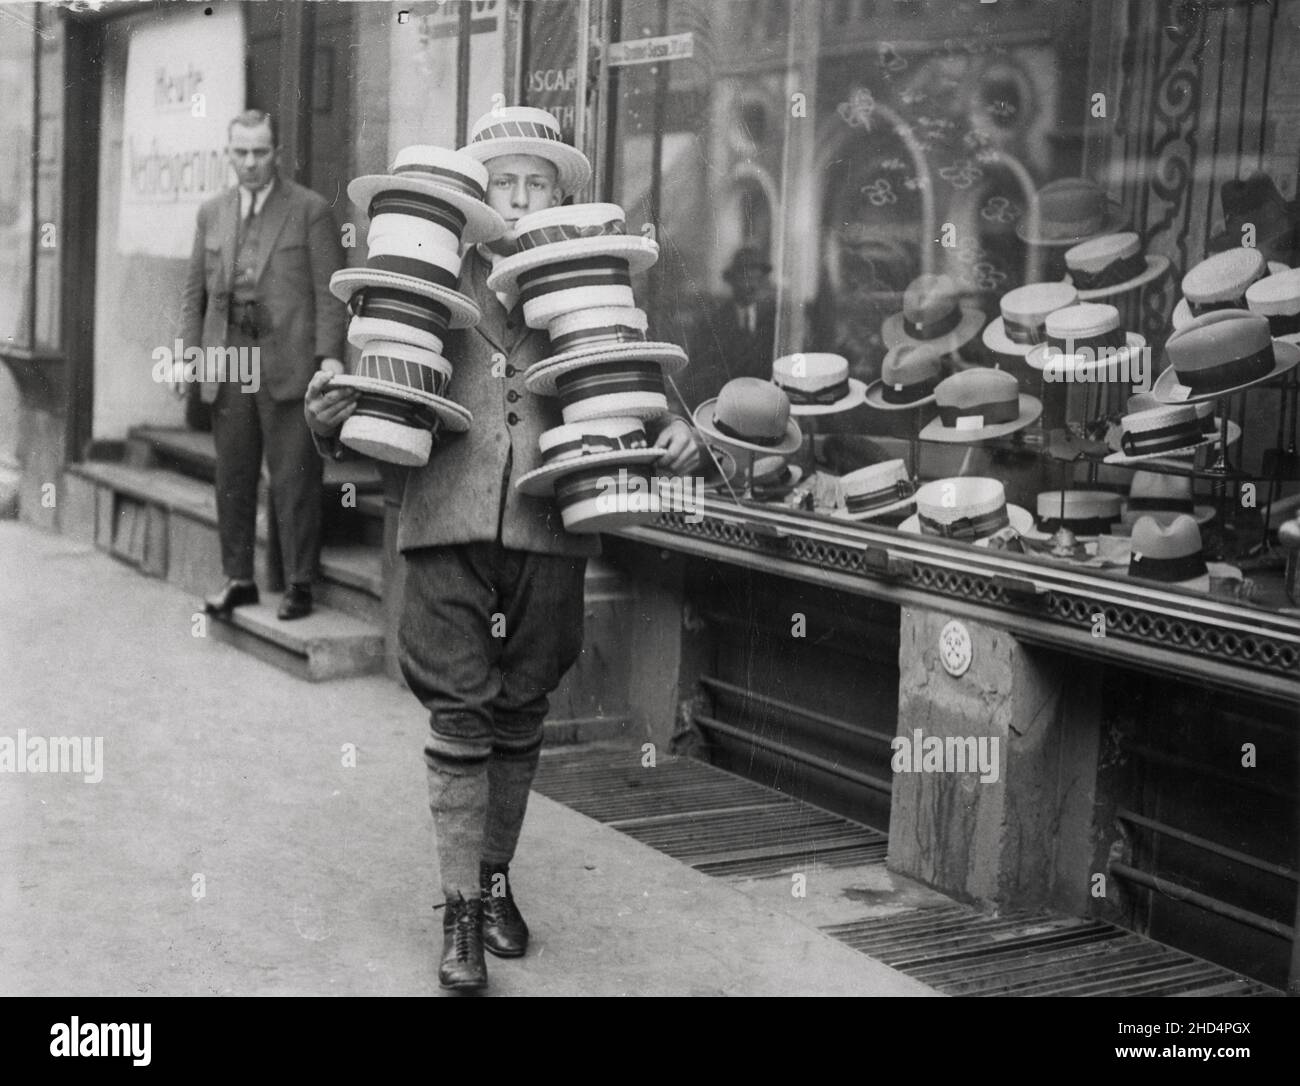 Vintage Pressefoto aus dem frühen 20th. Jahrhundert: Junger Mann außerhalb des Hutladens mit Bootsfahrern Stockfoto